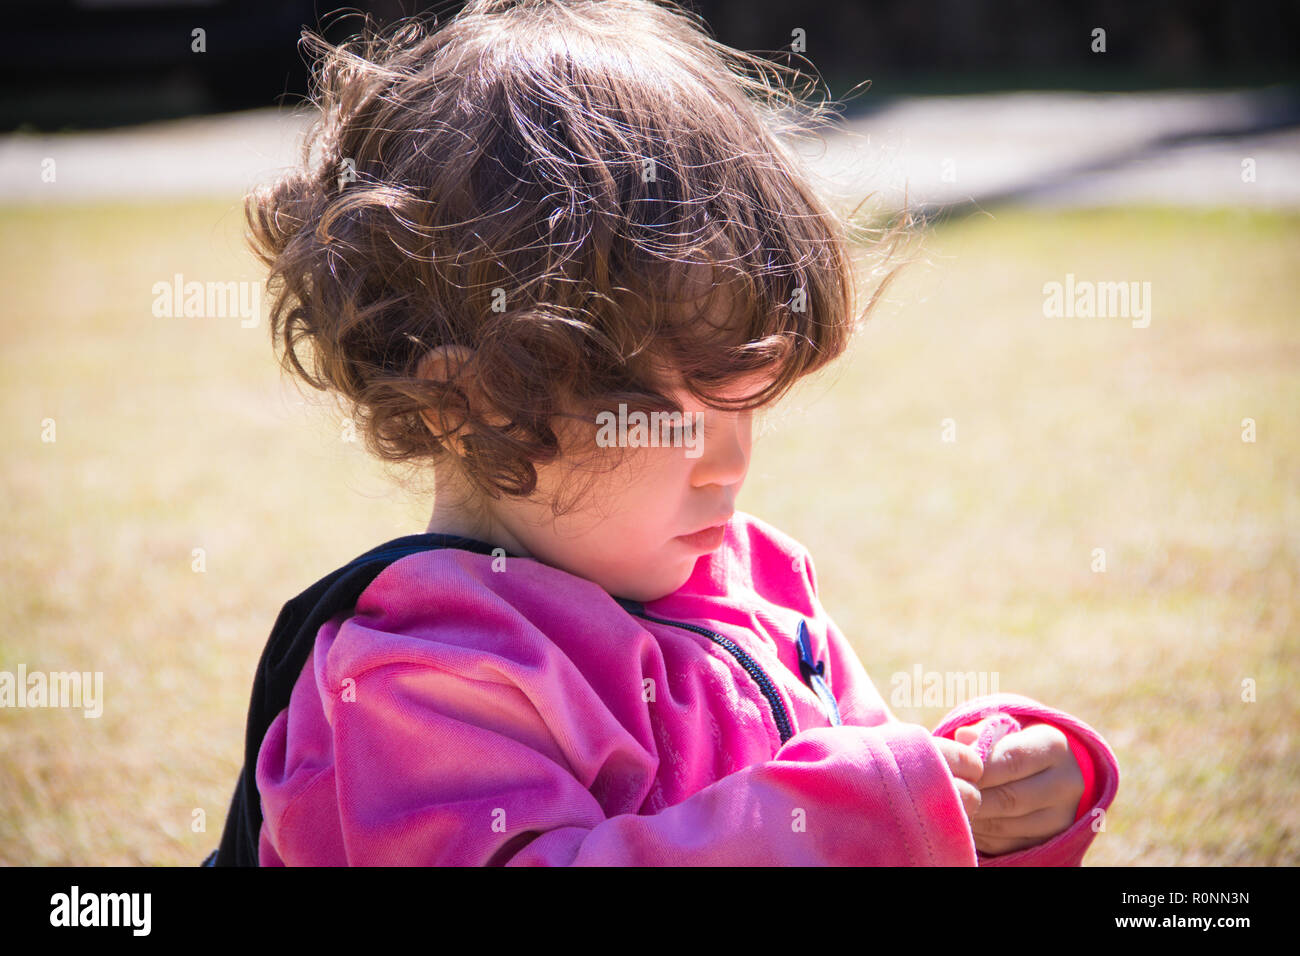 Ritratto di una ragazza in un parco a giocare con i suoi calzini Foto Stock